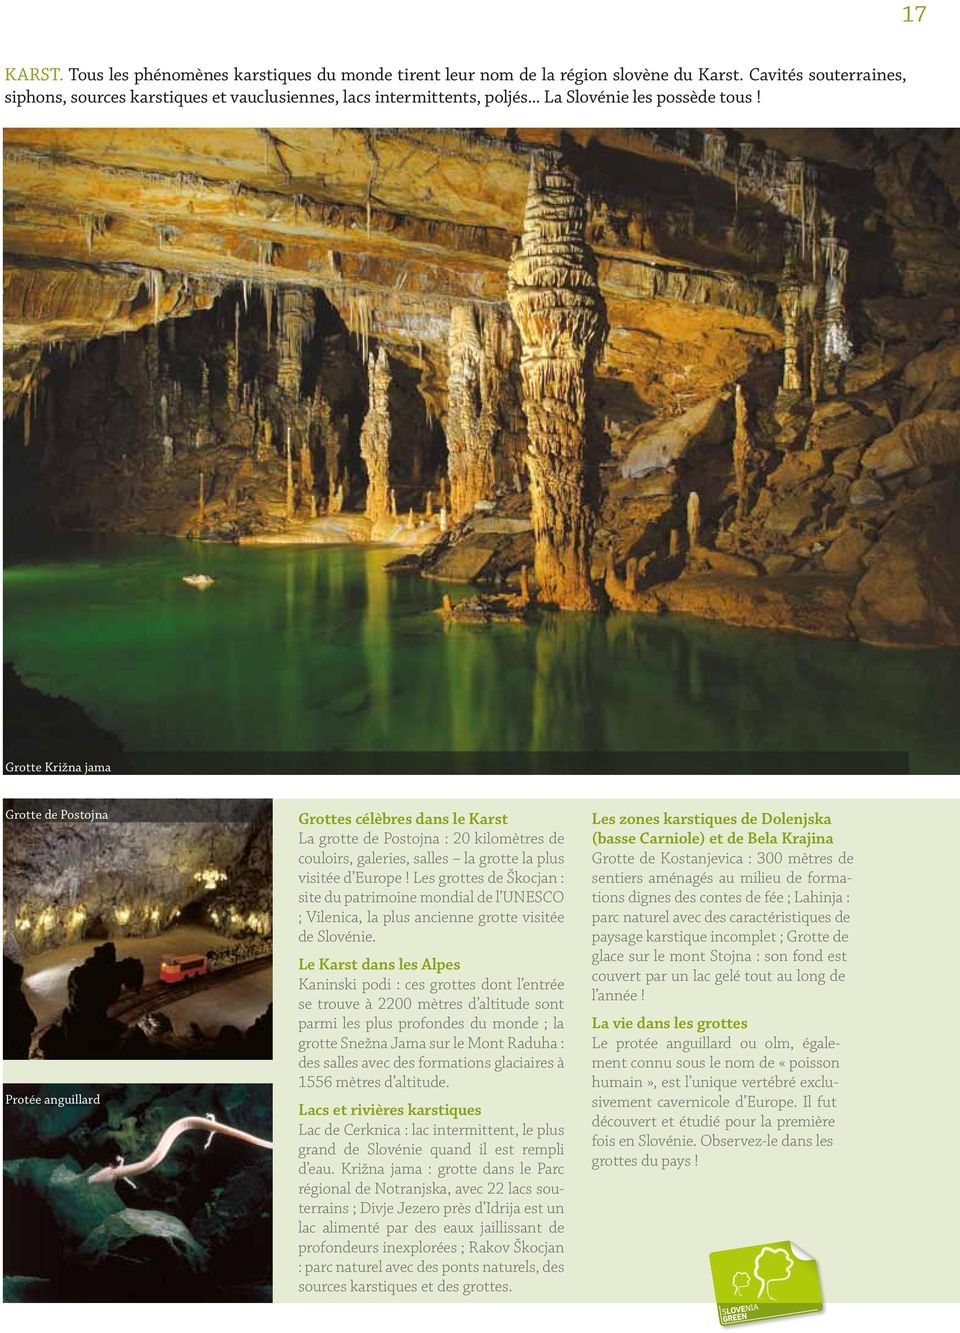 Grotte Križna jama Grotte de Postojna Protée anguillard Grottes célèbres dans le Karst La grotte de Postojna : 20 kilomètres de couloirs, galeries, salles la grotte la plus visitée d Europe!